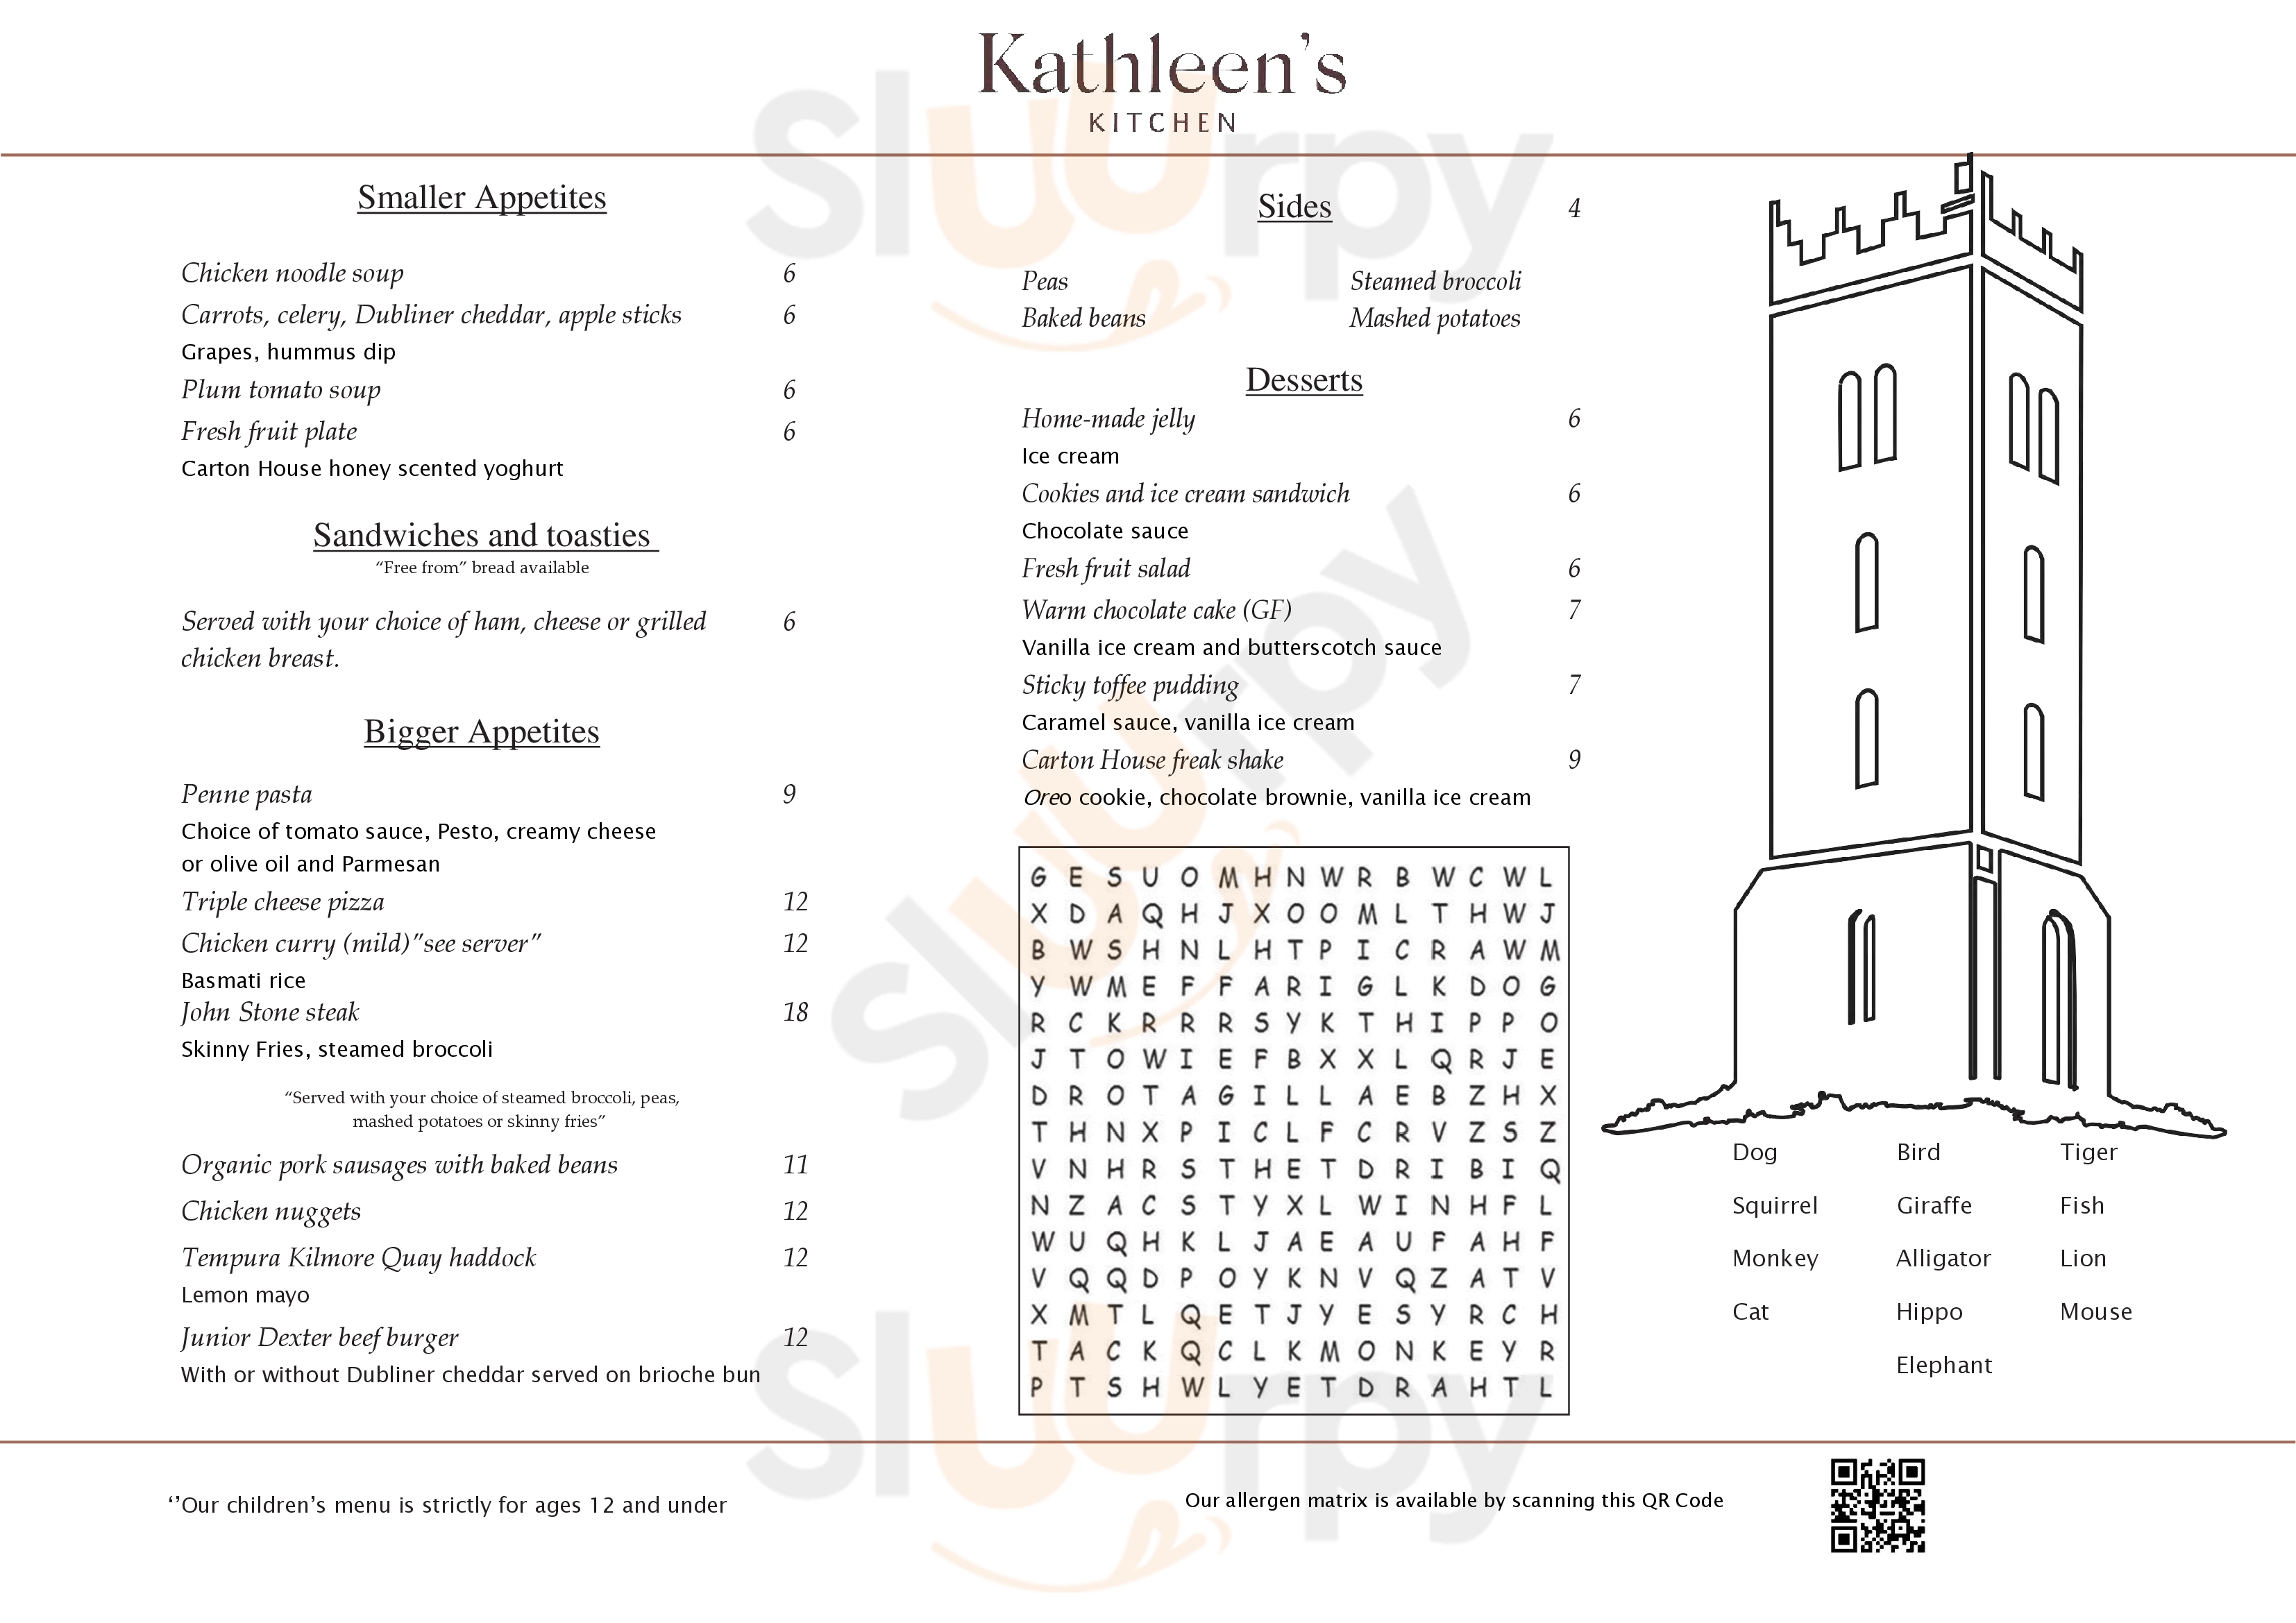 Kathleen's Kitchen At Carton House Maynooth Menu - 1